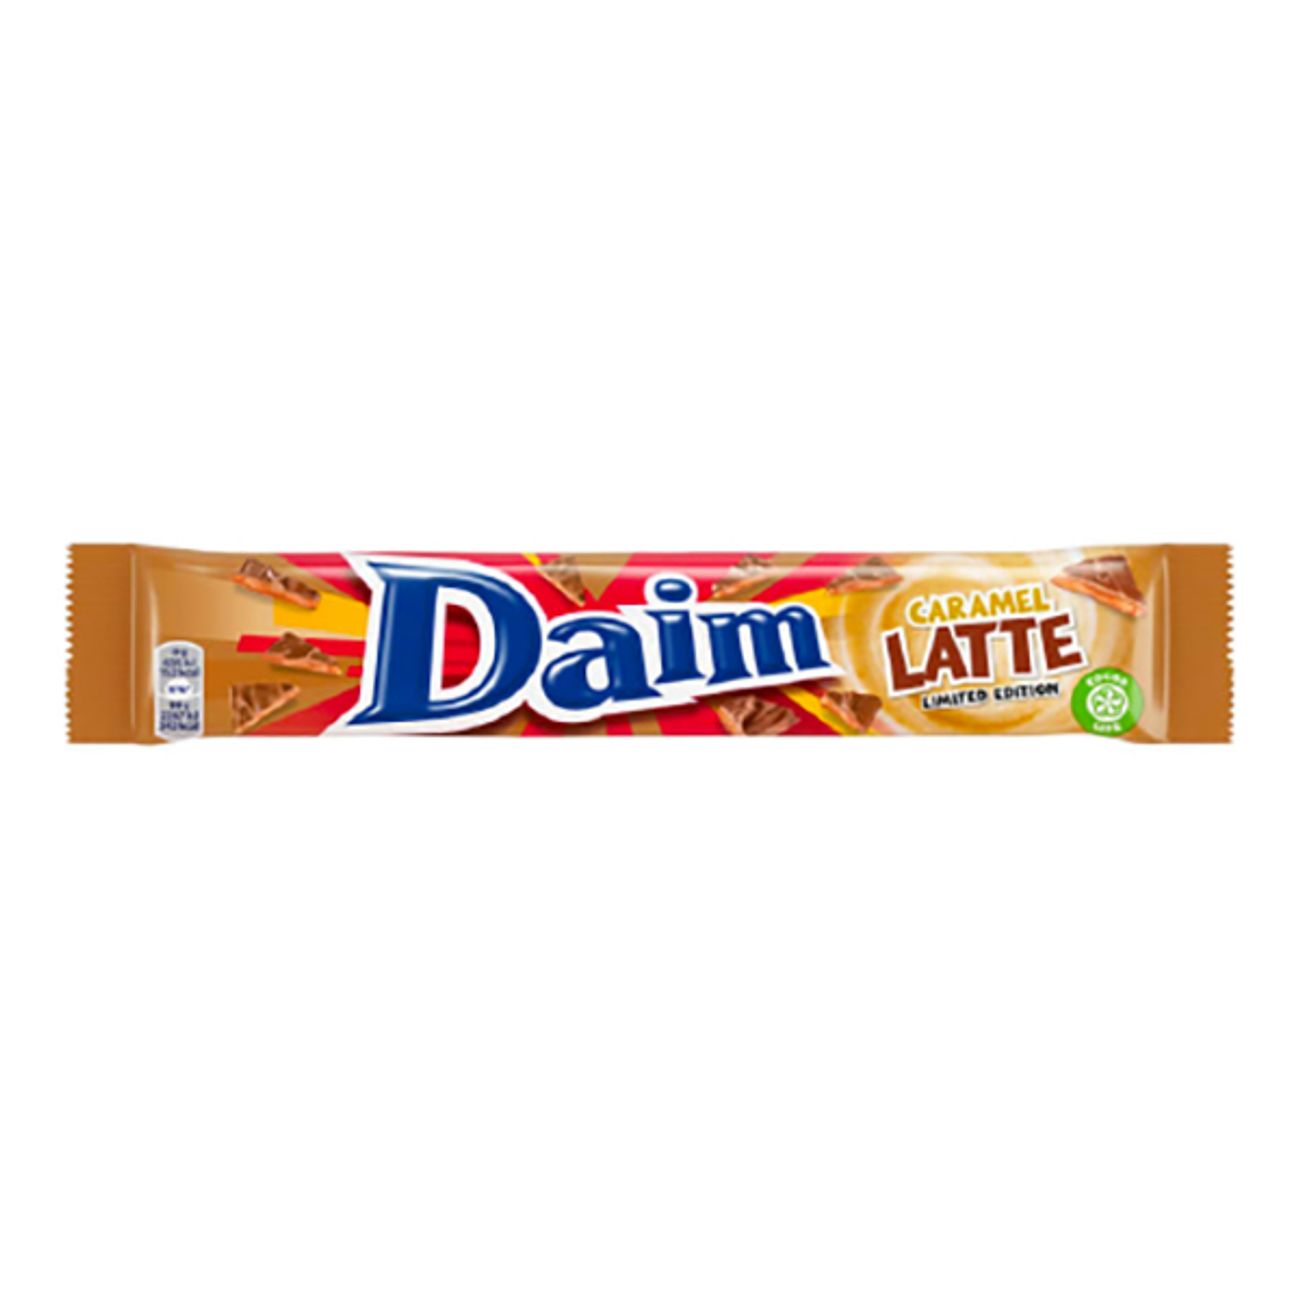 daim-caramel-latte-74047-1